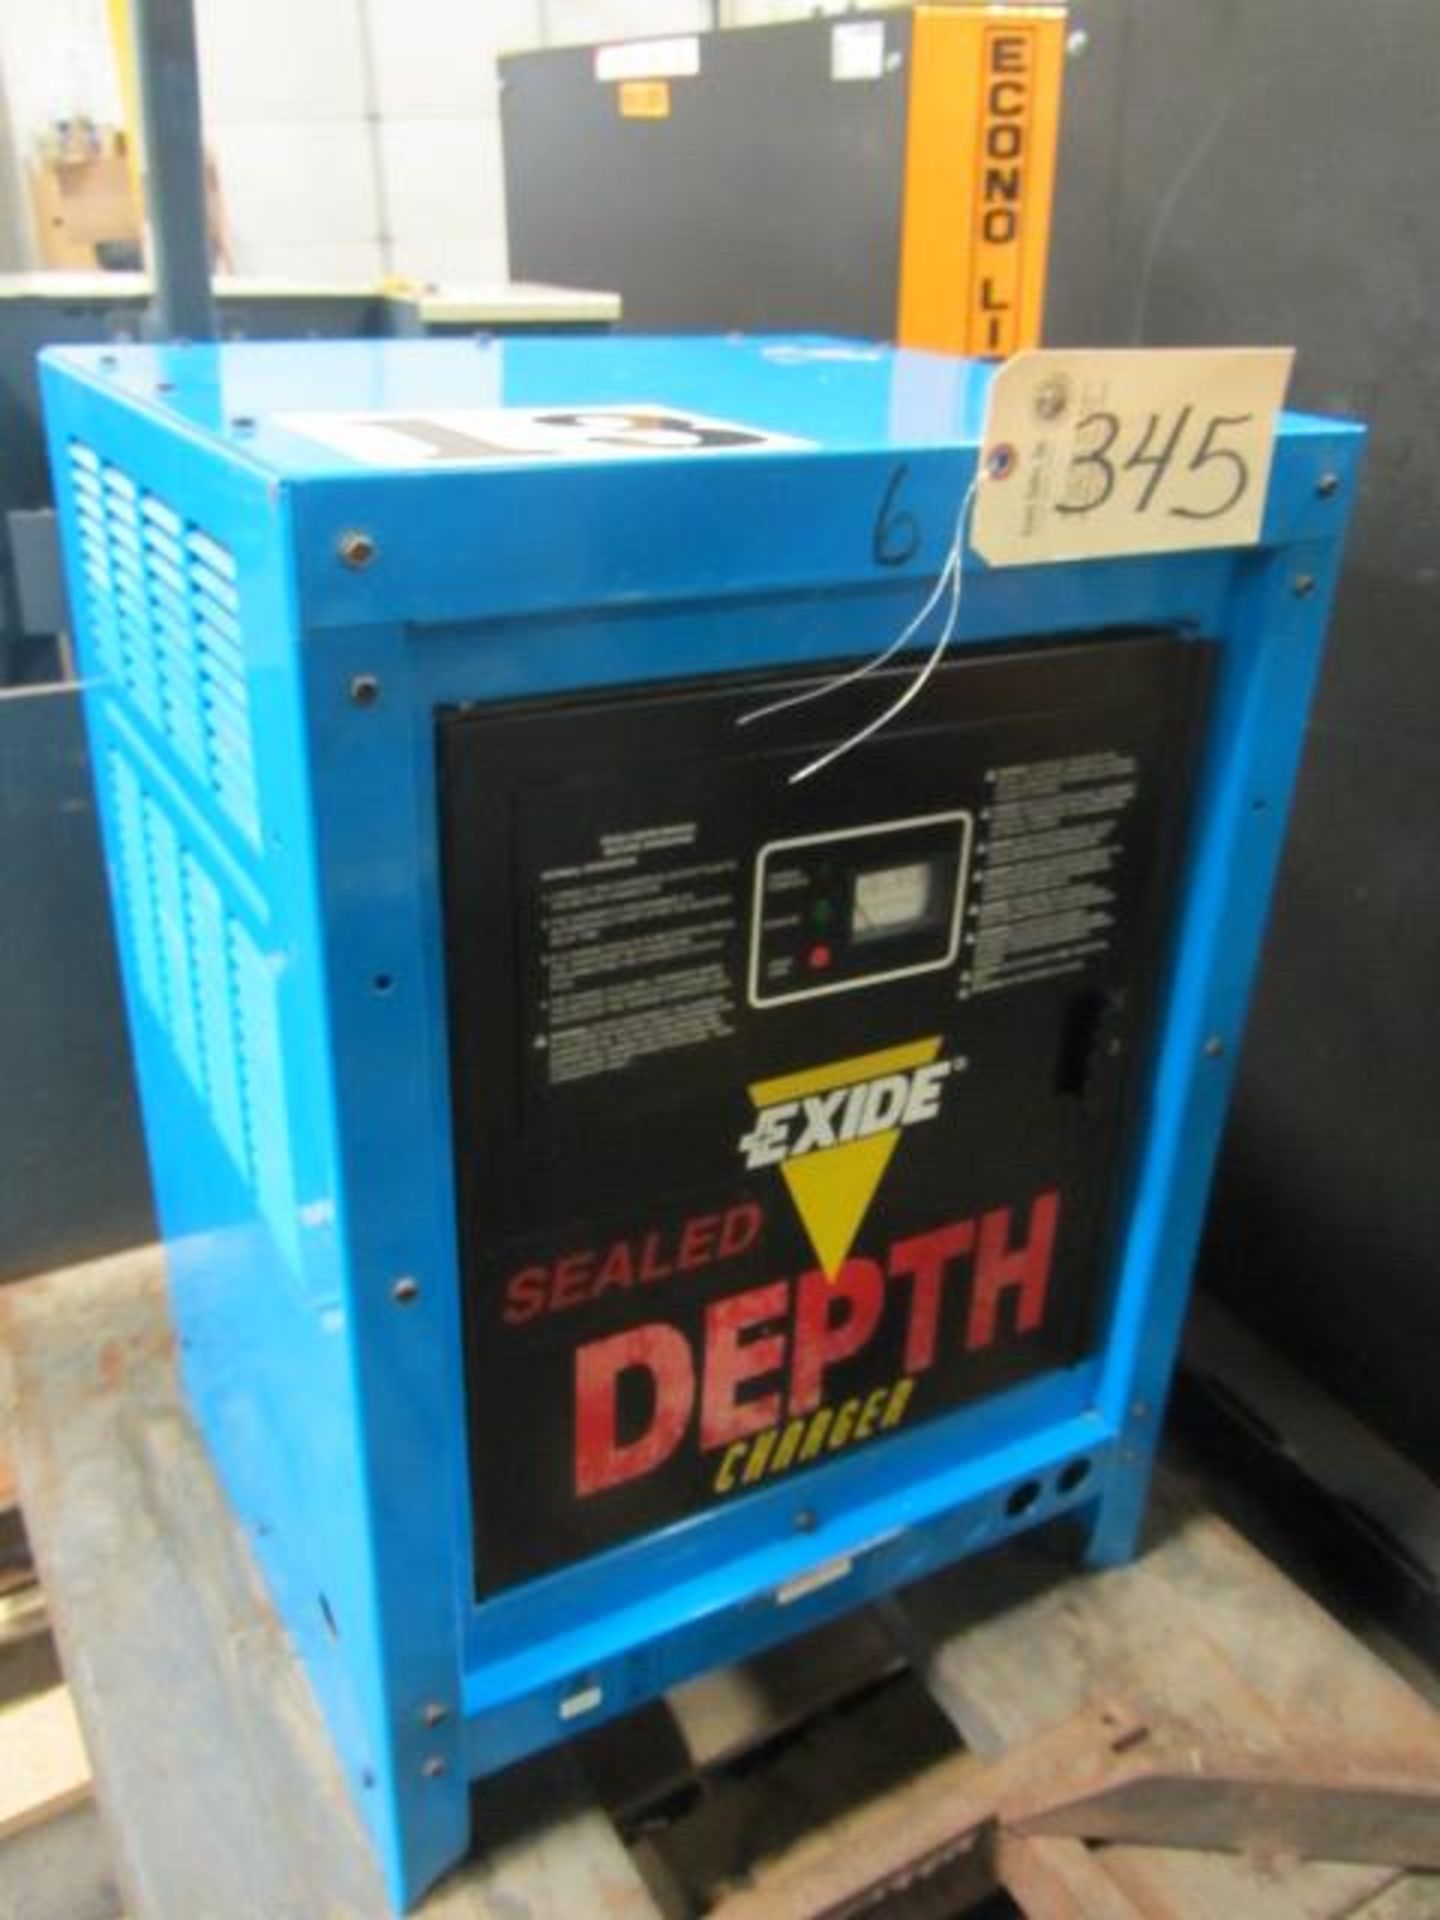 Exide Sealed Depth Battery Charger with 480V, 12 Amps, 1 Phase, sn:KVG-6530